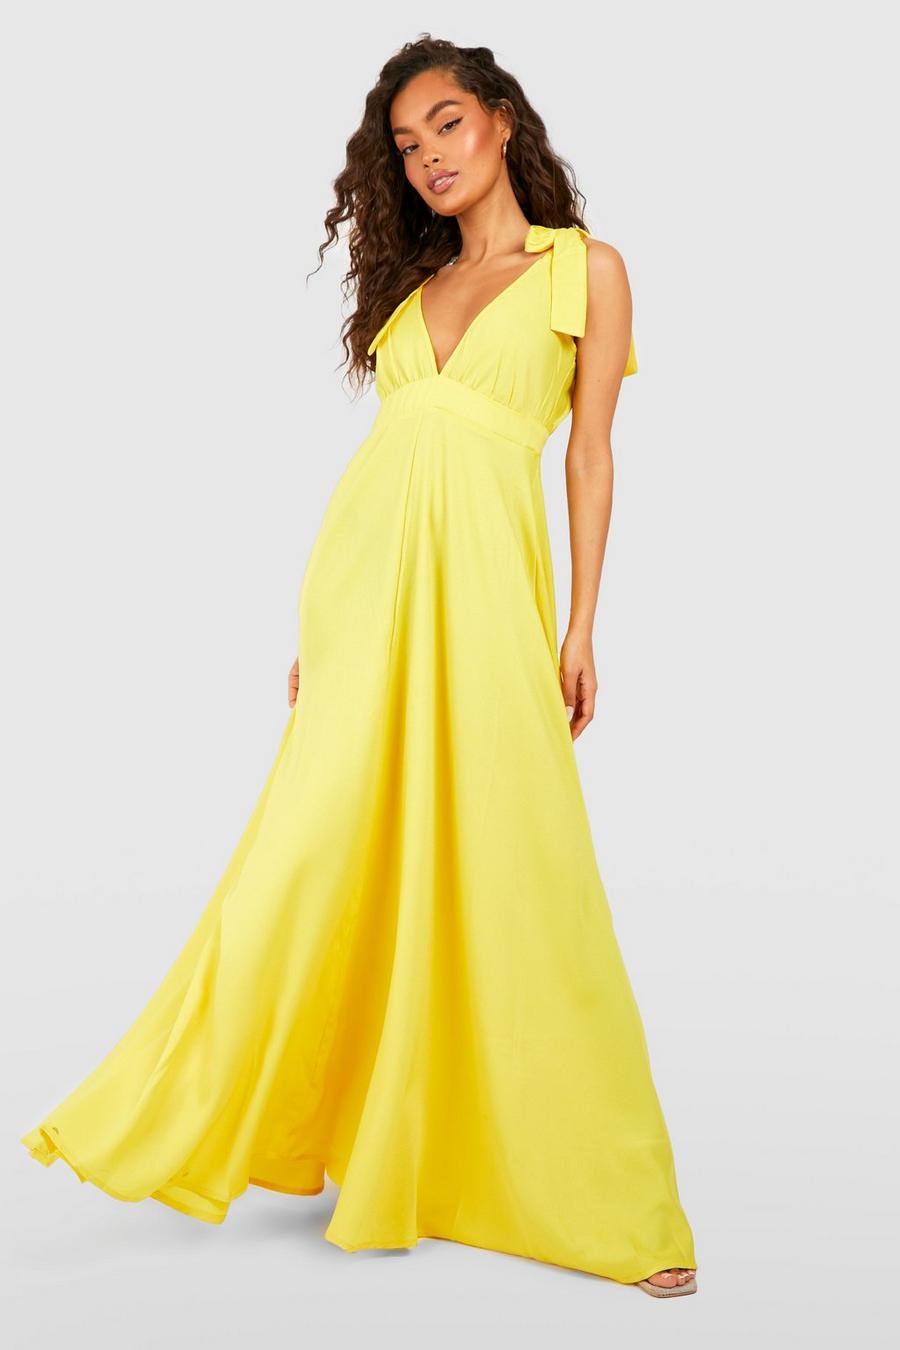 צהוב giallo שמלת מקסי עם מחשוף עמוק וכתפיות עם קשירה